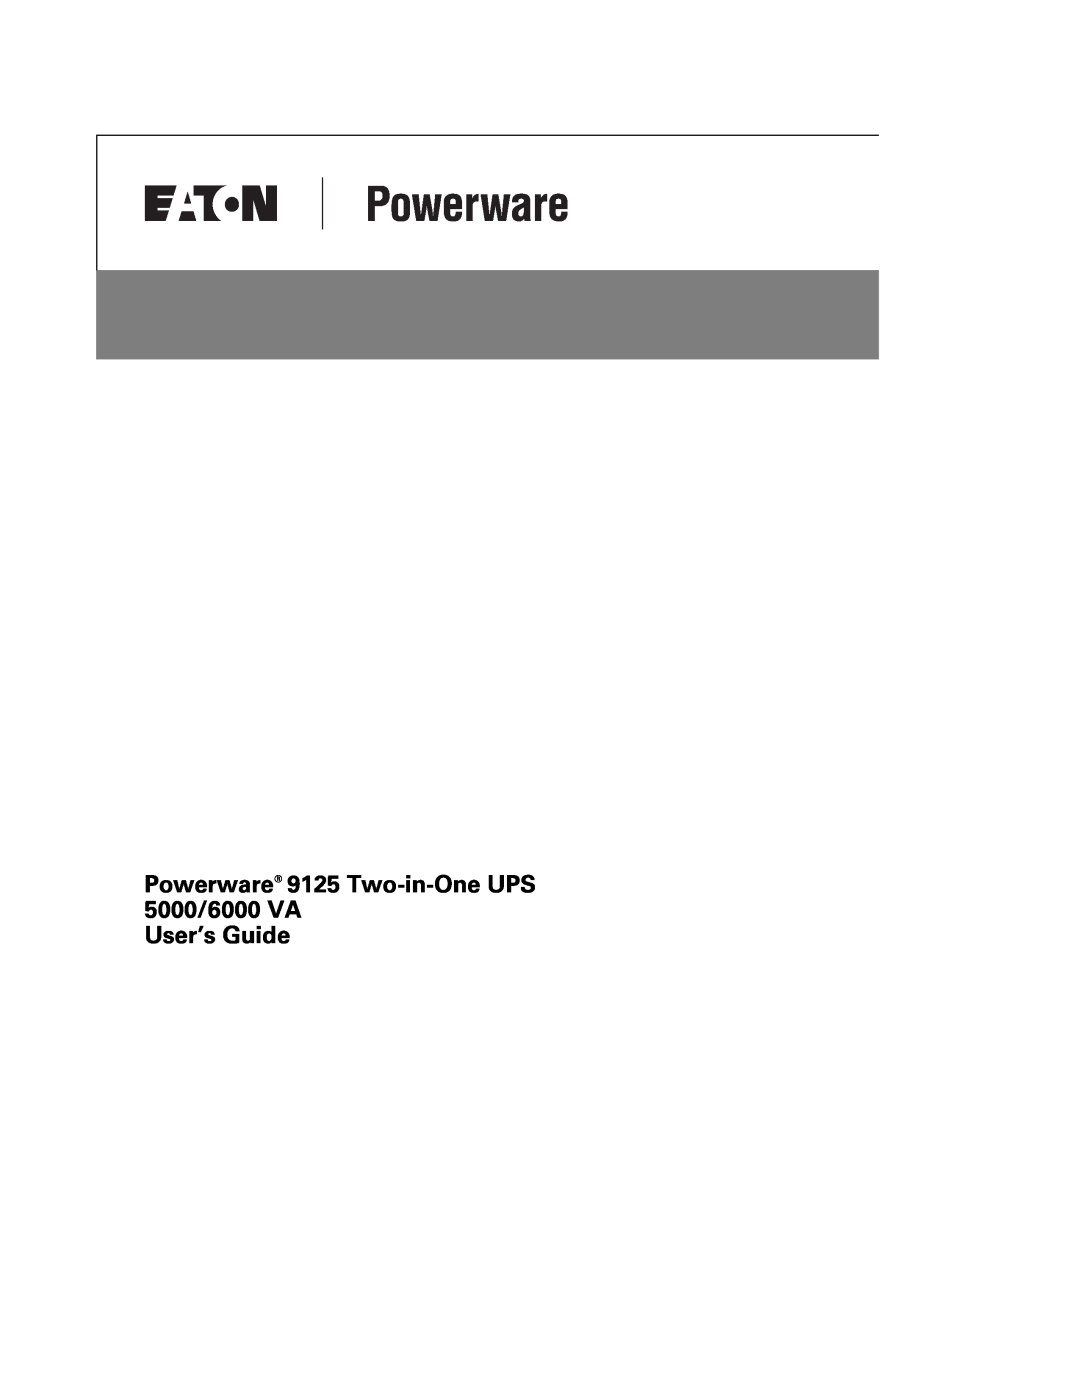 Powerware manual Powerware 9125 Two-in-One UPS 5000/6000 VA User’s Guide 